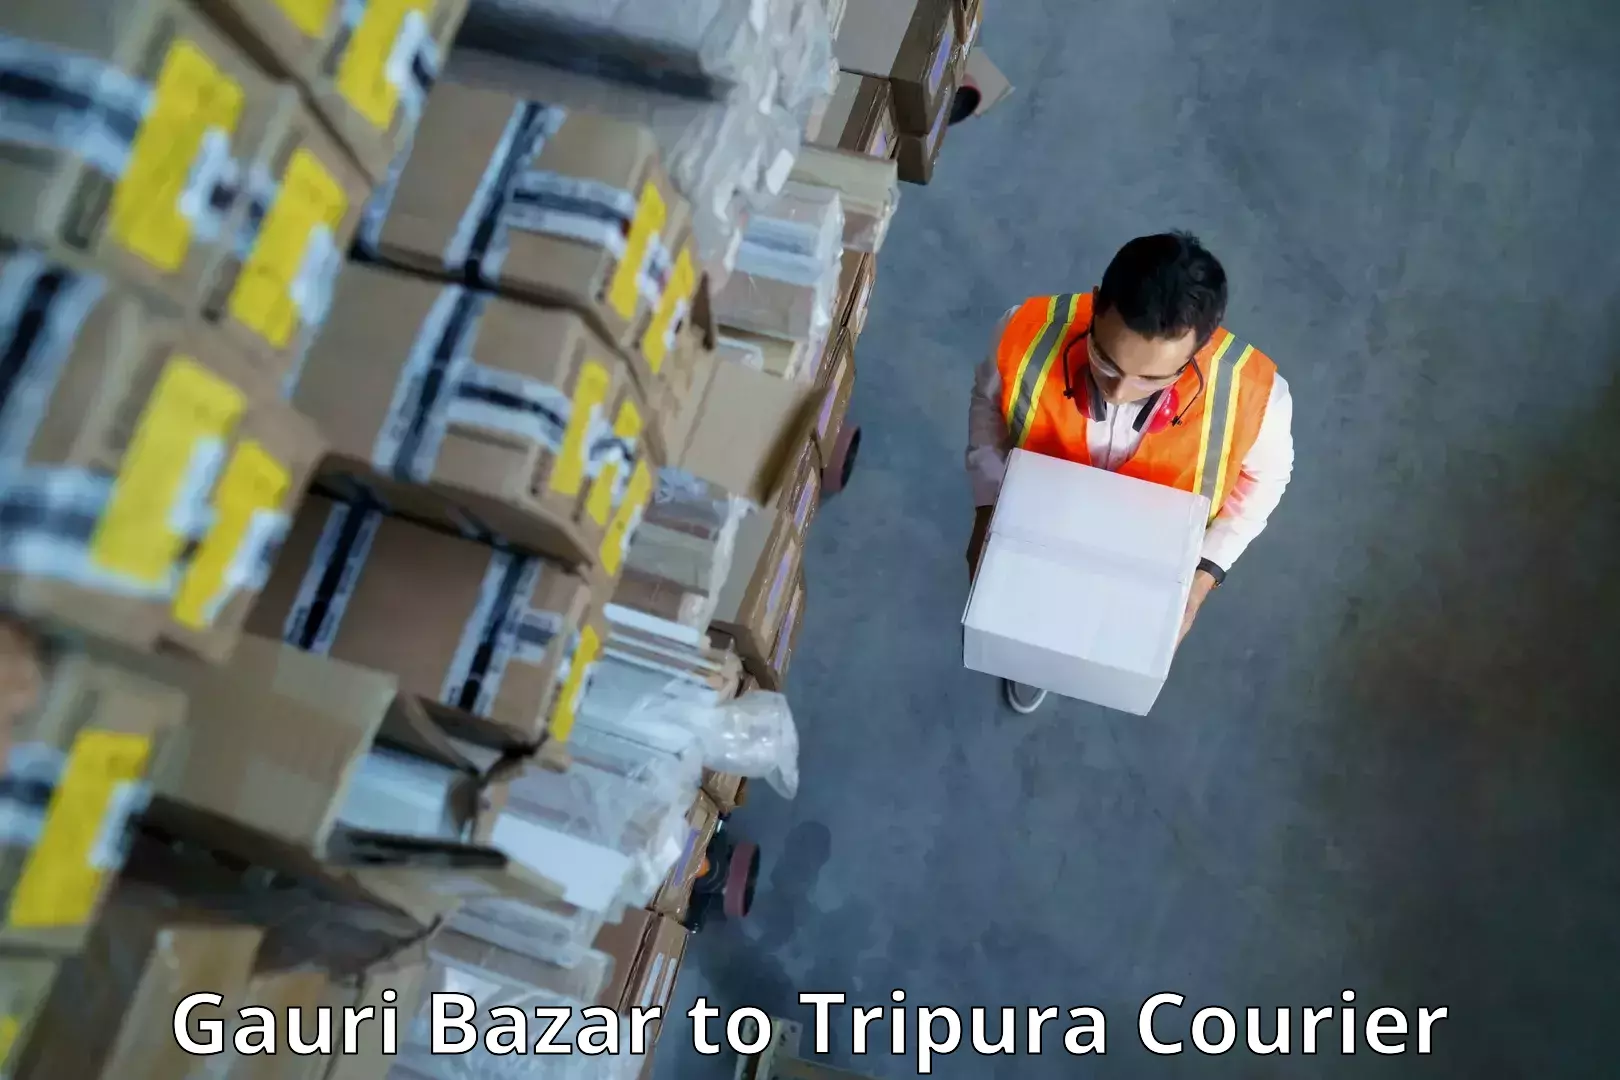 Courier service comparison in Gauri Bazar to Ambassa